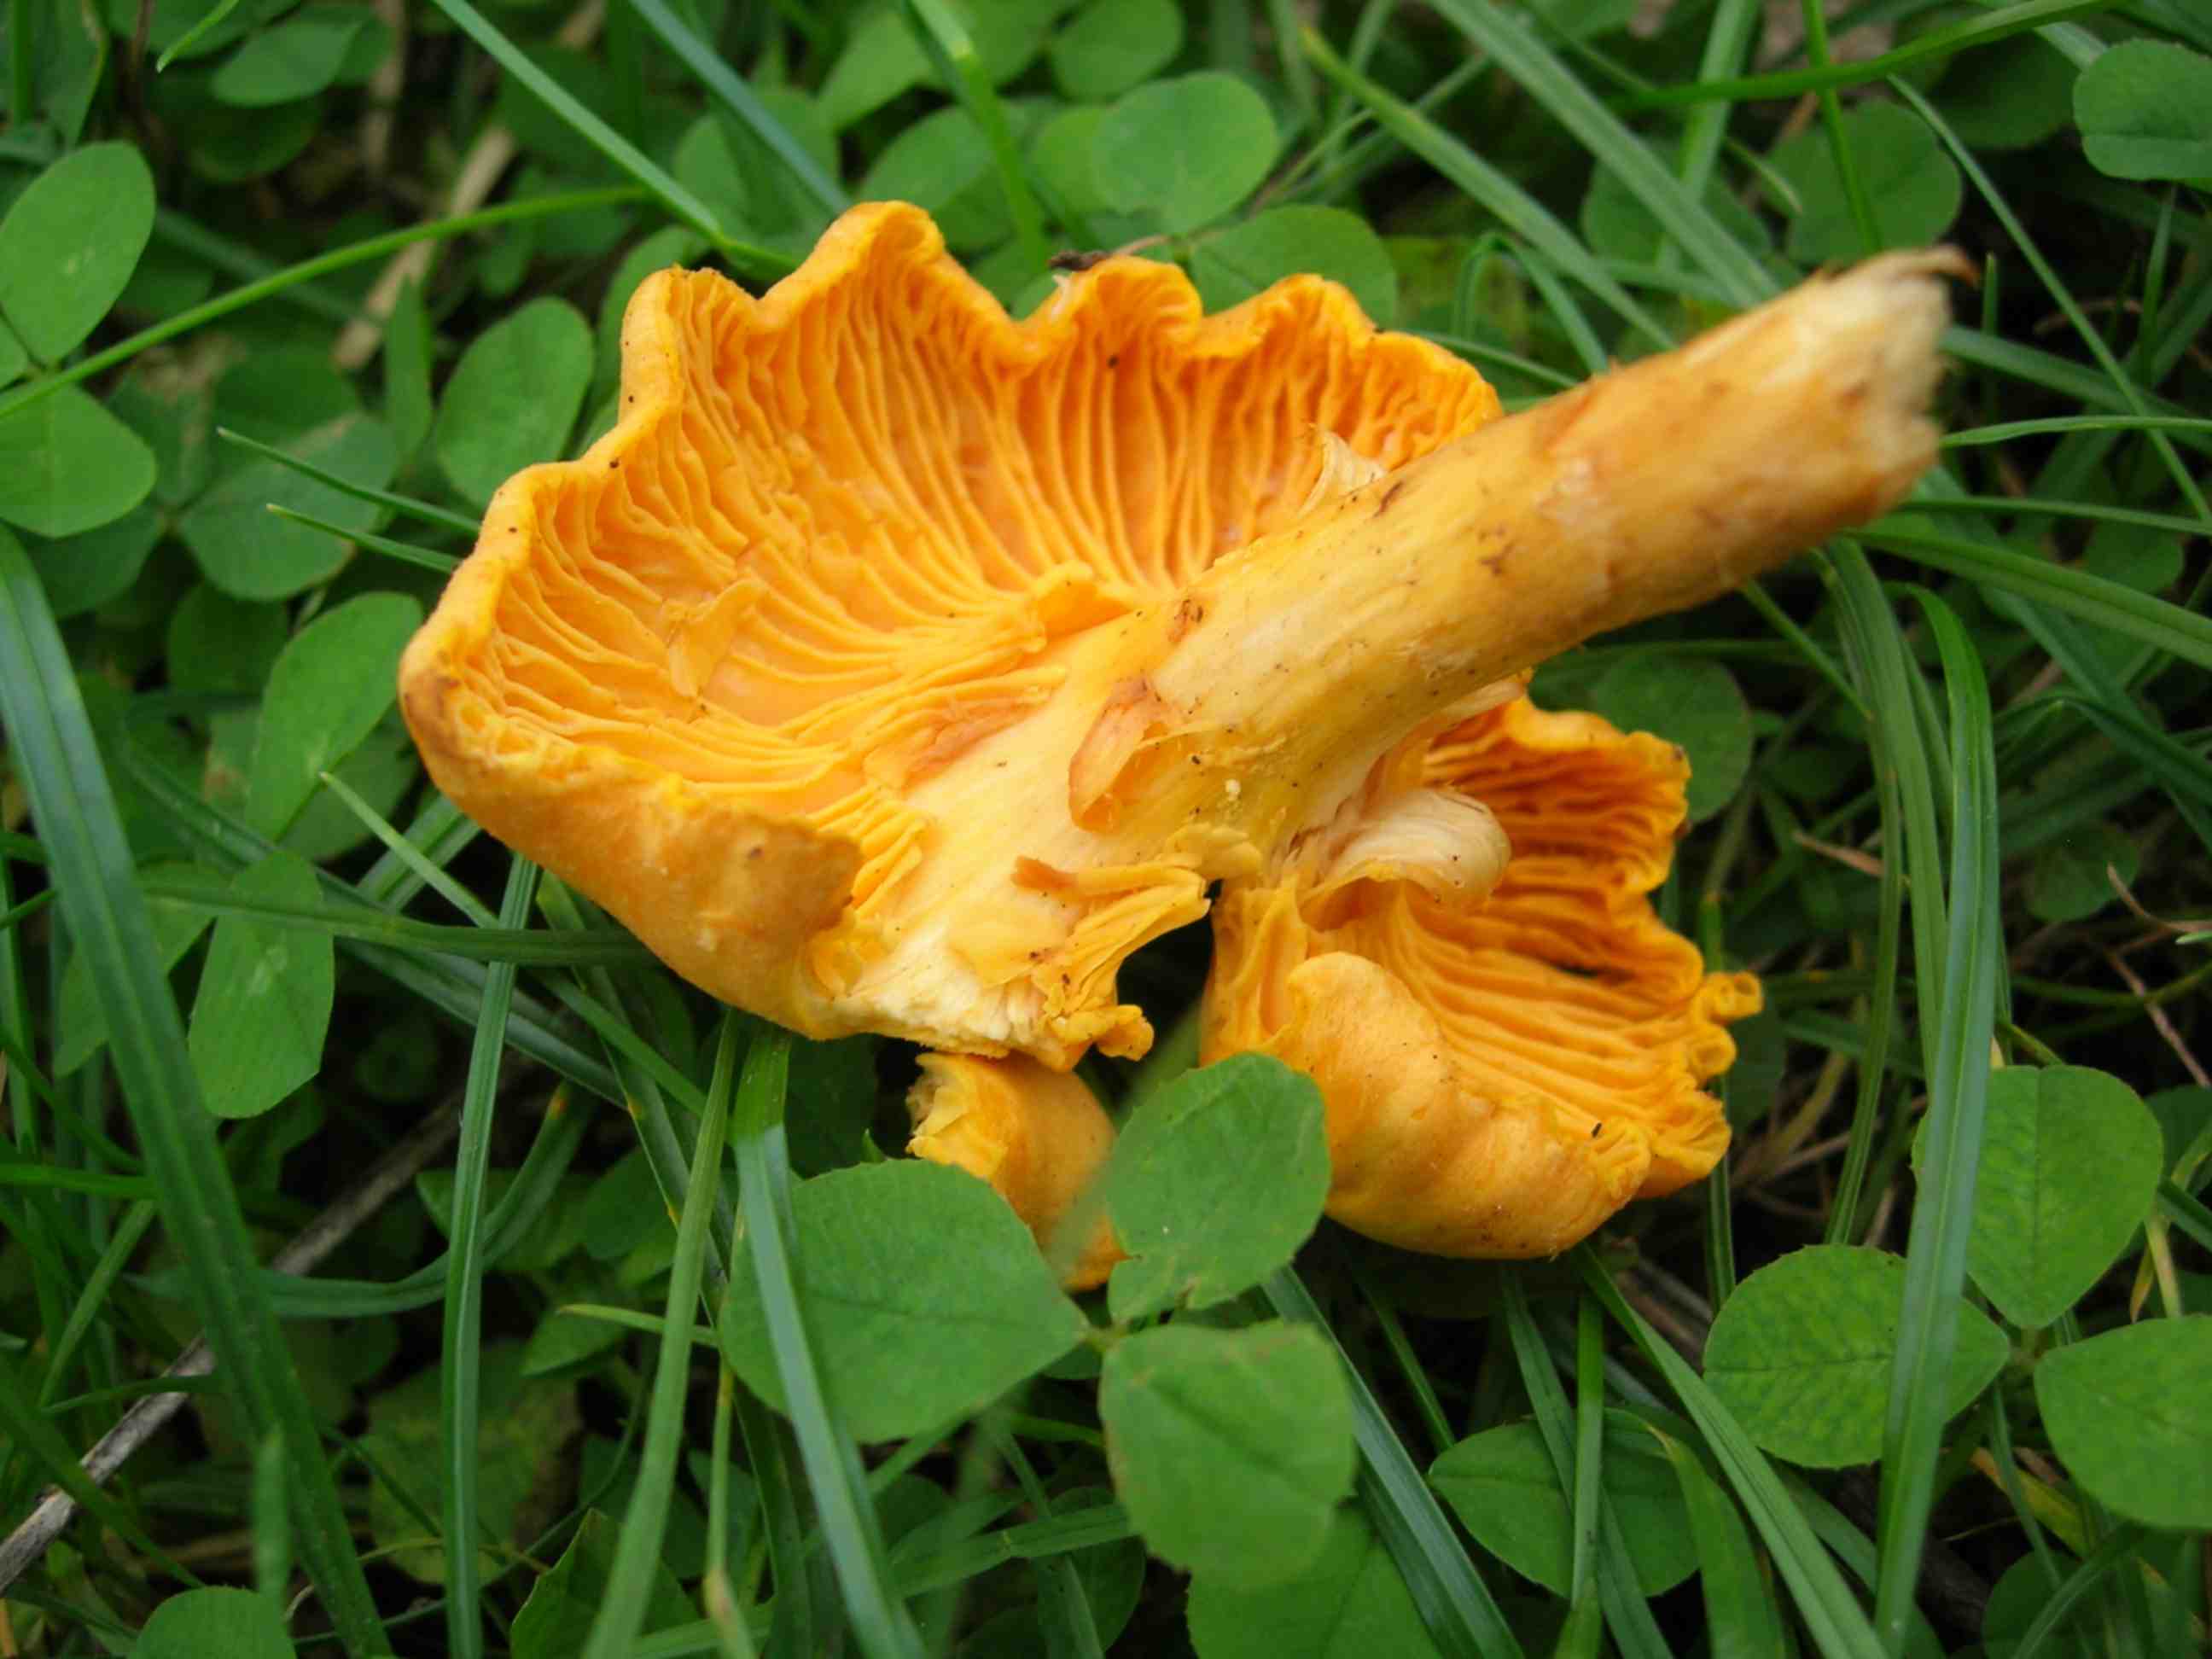 The Mushroom Table - Wild Mushroom Alphabetical List